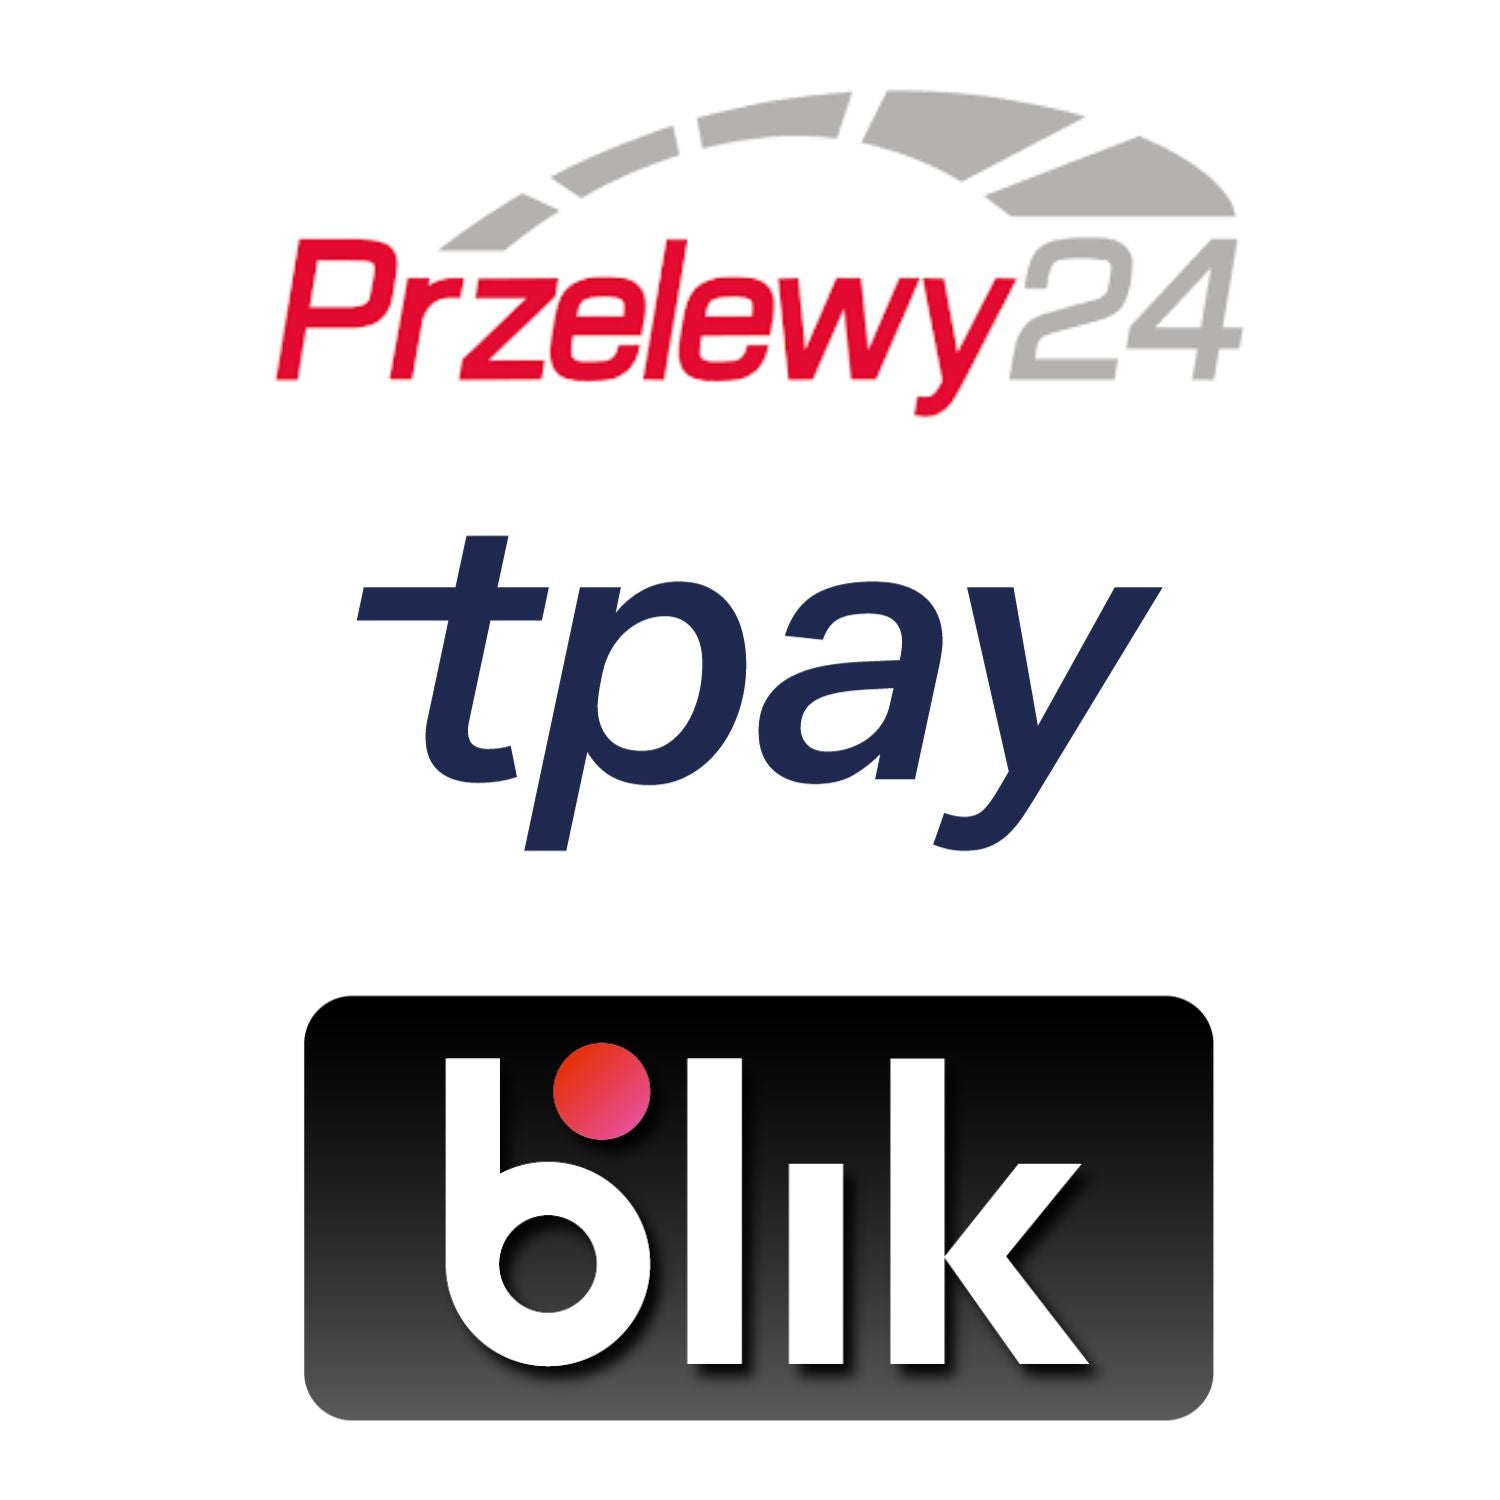 Dostępne płatności Tpay i Blik przelewy24. Bezpieczeństwo płatności gwarantuje Blik i tPay